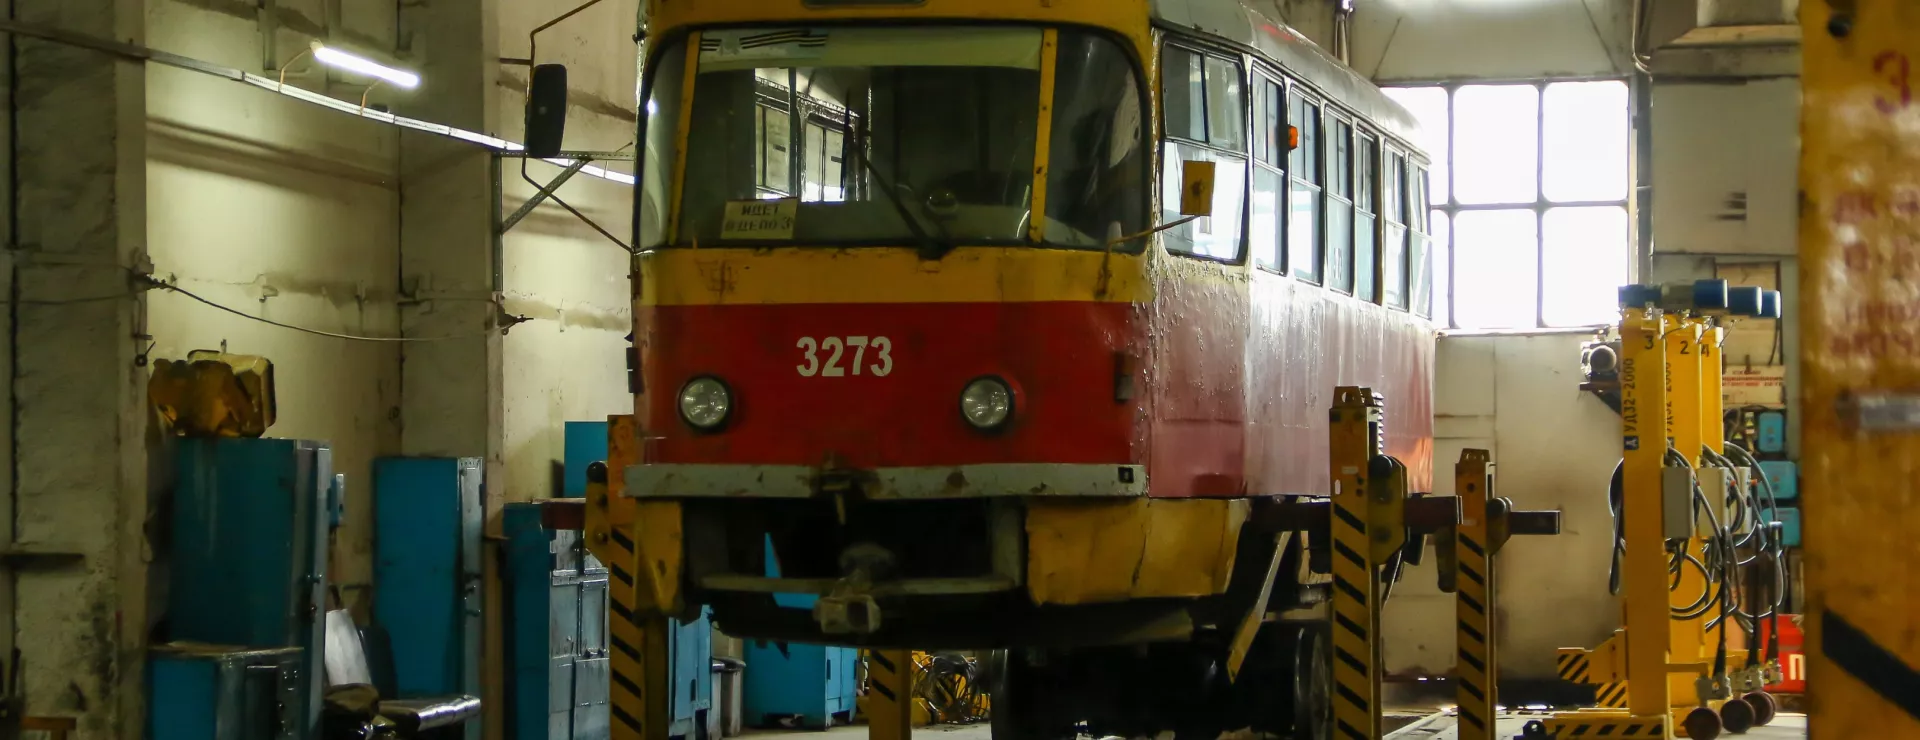 Трансформация вагонов: как в Барнауле старые трамваи получают вторую жизнь. Фото